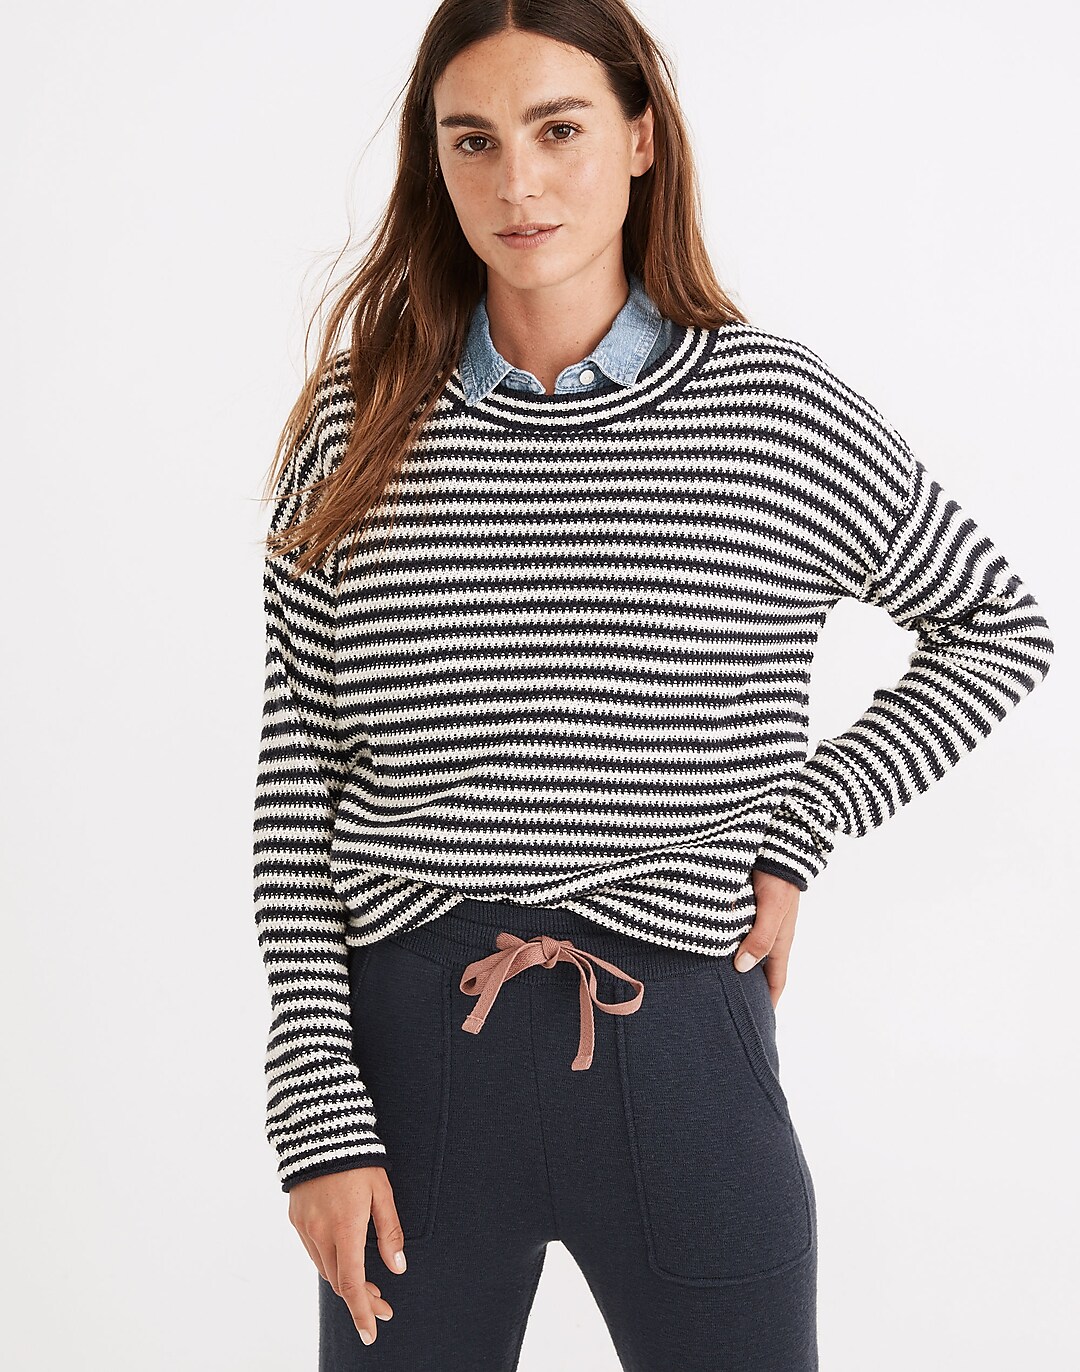 Seagrove Pullover Sweater in Stripe